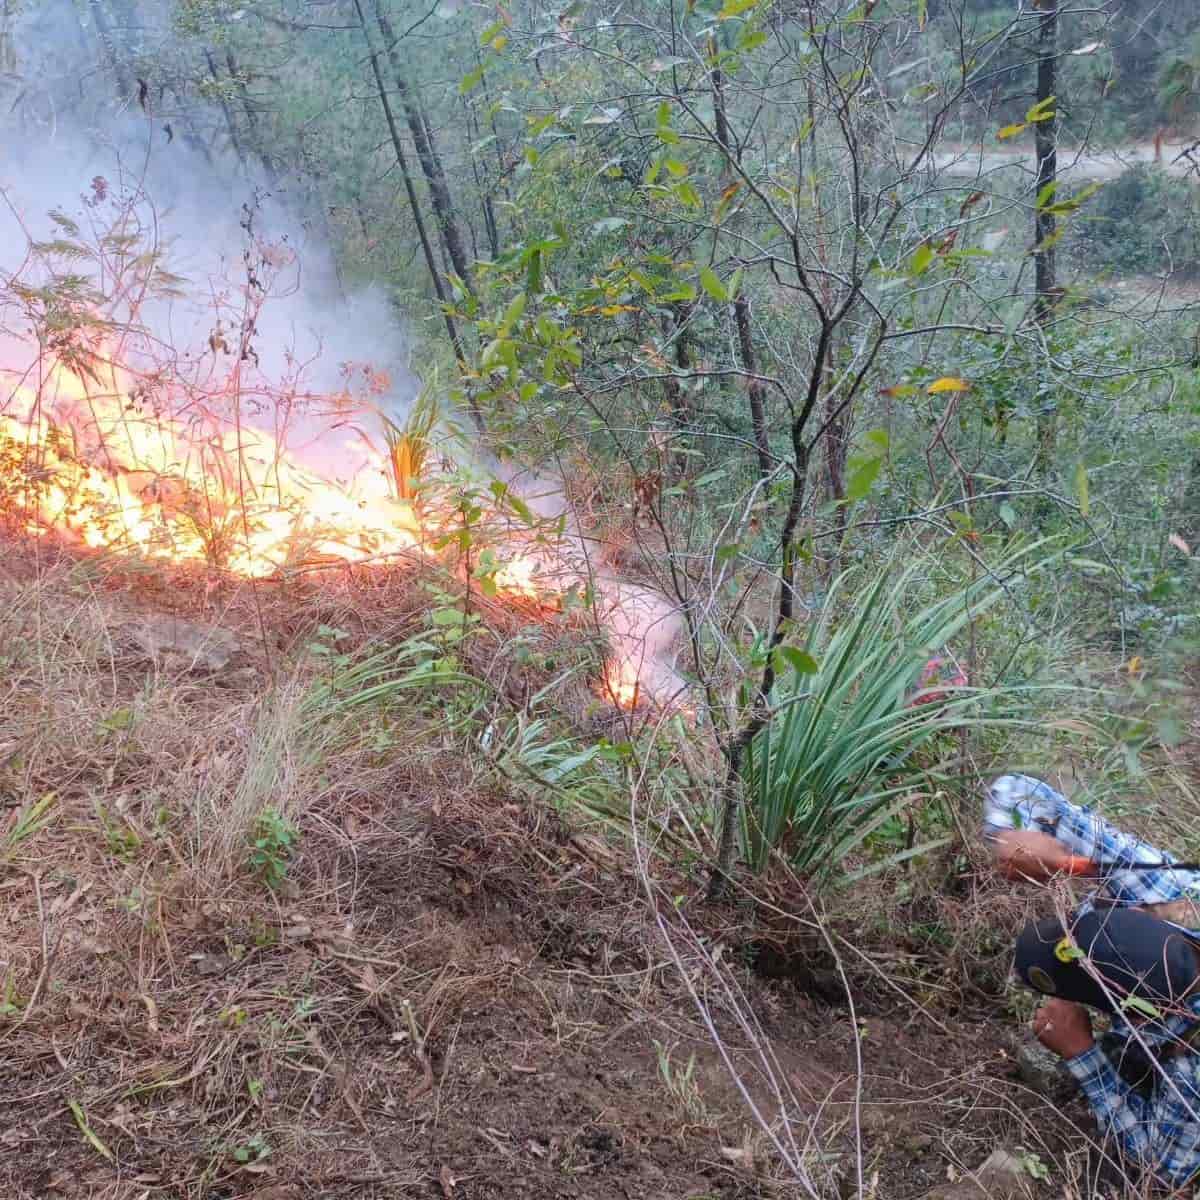 Protección Civil del Estado, informó que el incendio en la Sierra de Santiago, fue controlada en un 98 por ciento a 24 horas de haberse iniciado por causas aún desconocidas.